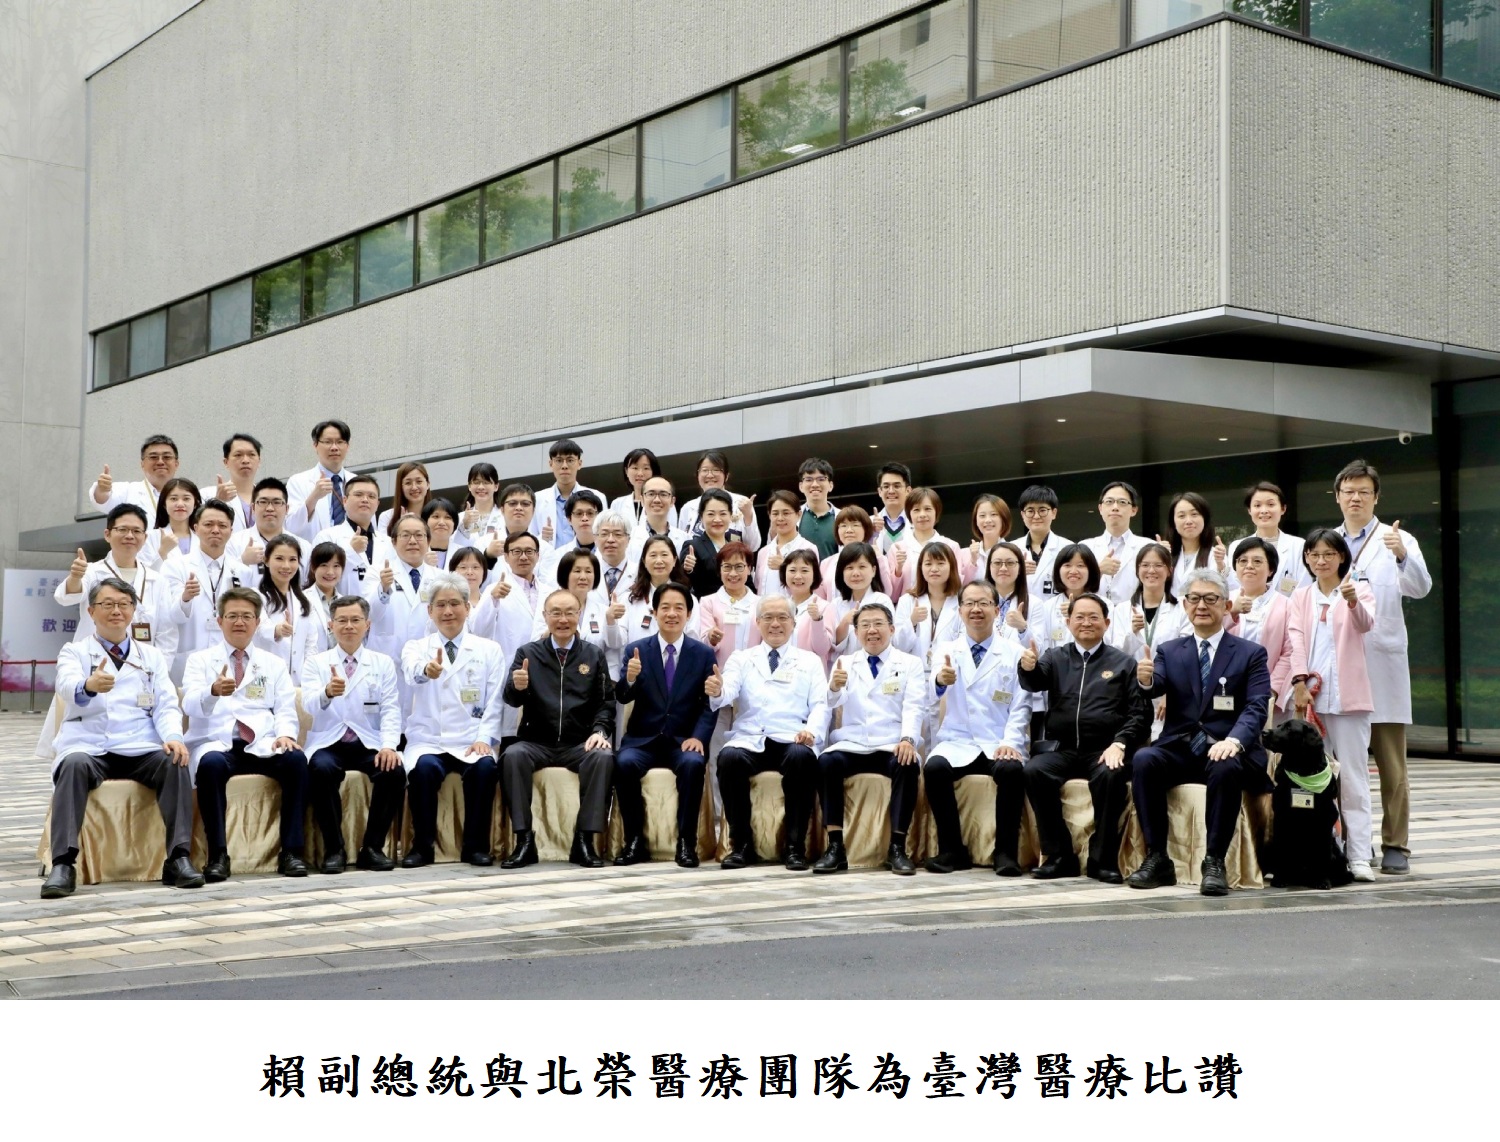 賴副總統與北榮醫療團隊為臺灣醫療比讚